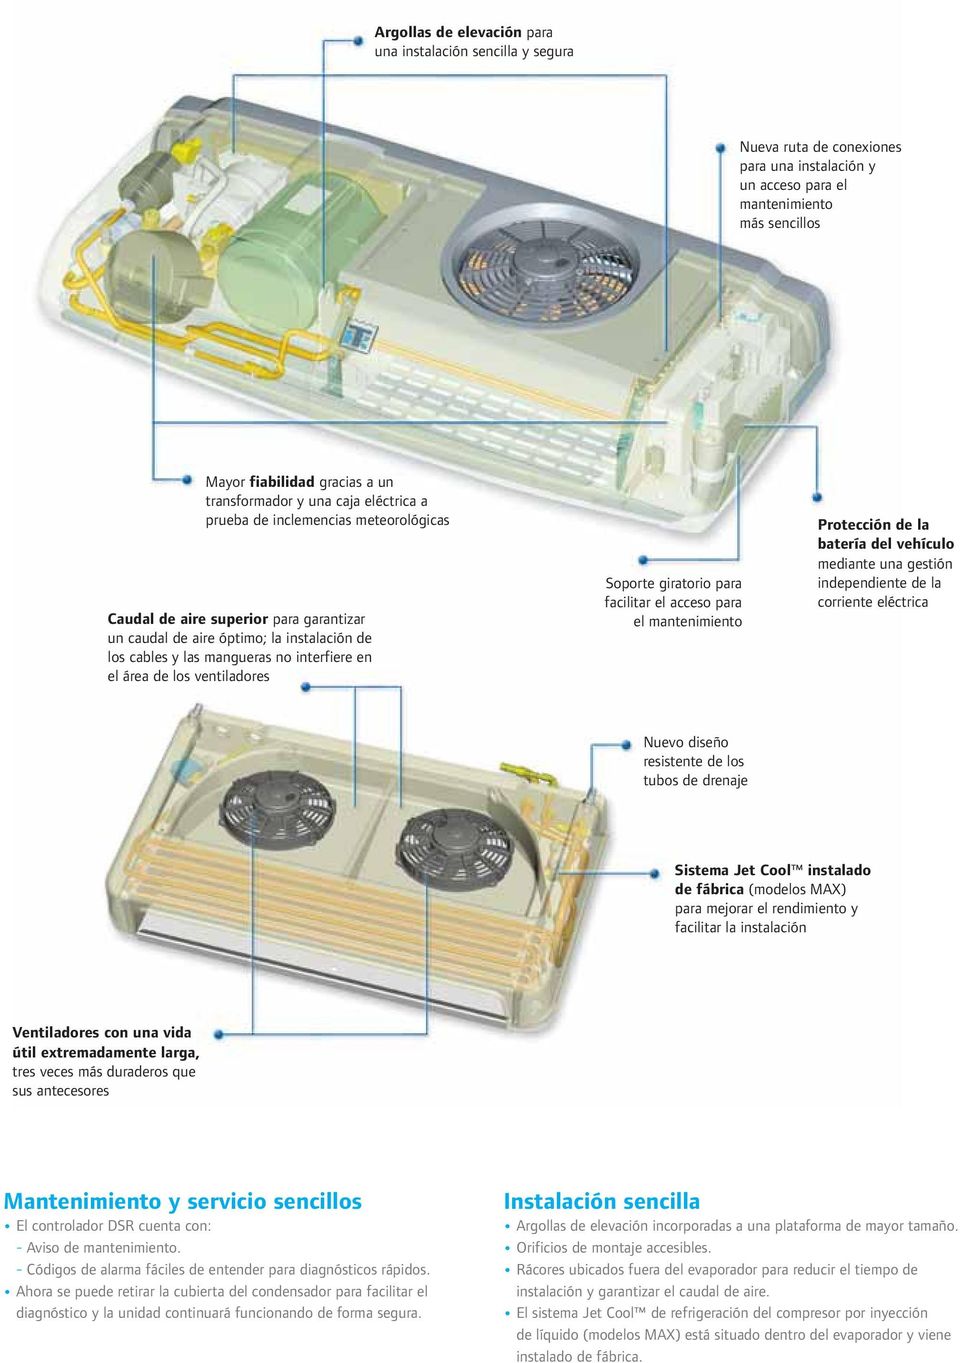 los ventiladores Soporte giratorio para facilitar el acceso para el mantenimiento Protección de la batería del vehículo mediante una gestión independiente de la corriente eléctrica Nuevo diseño